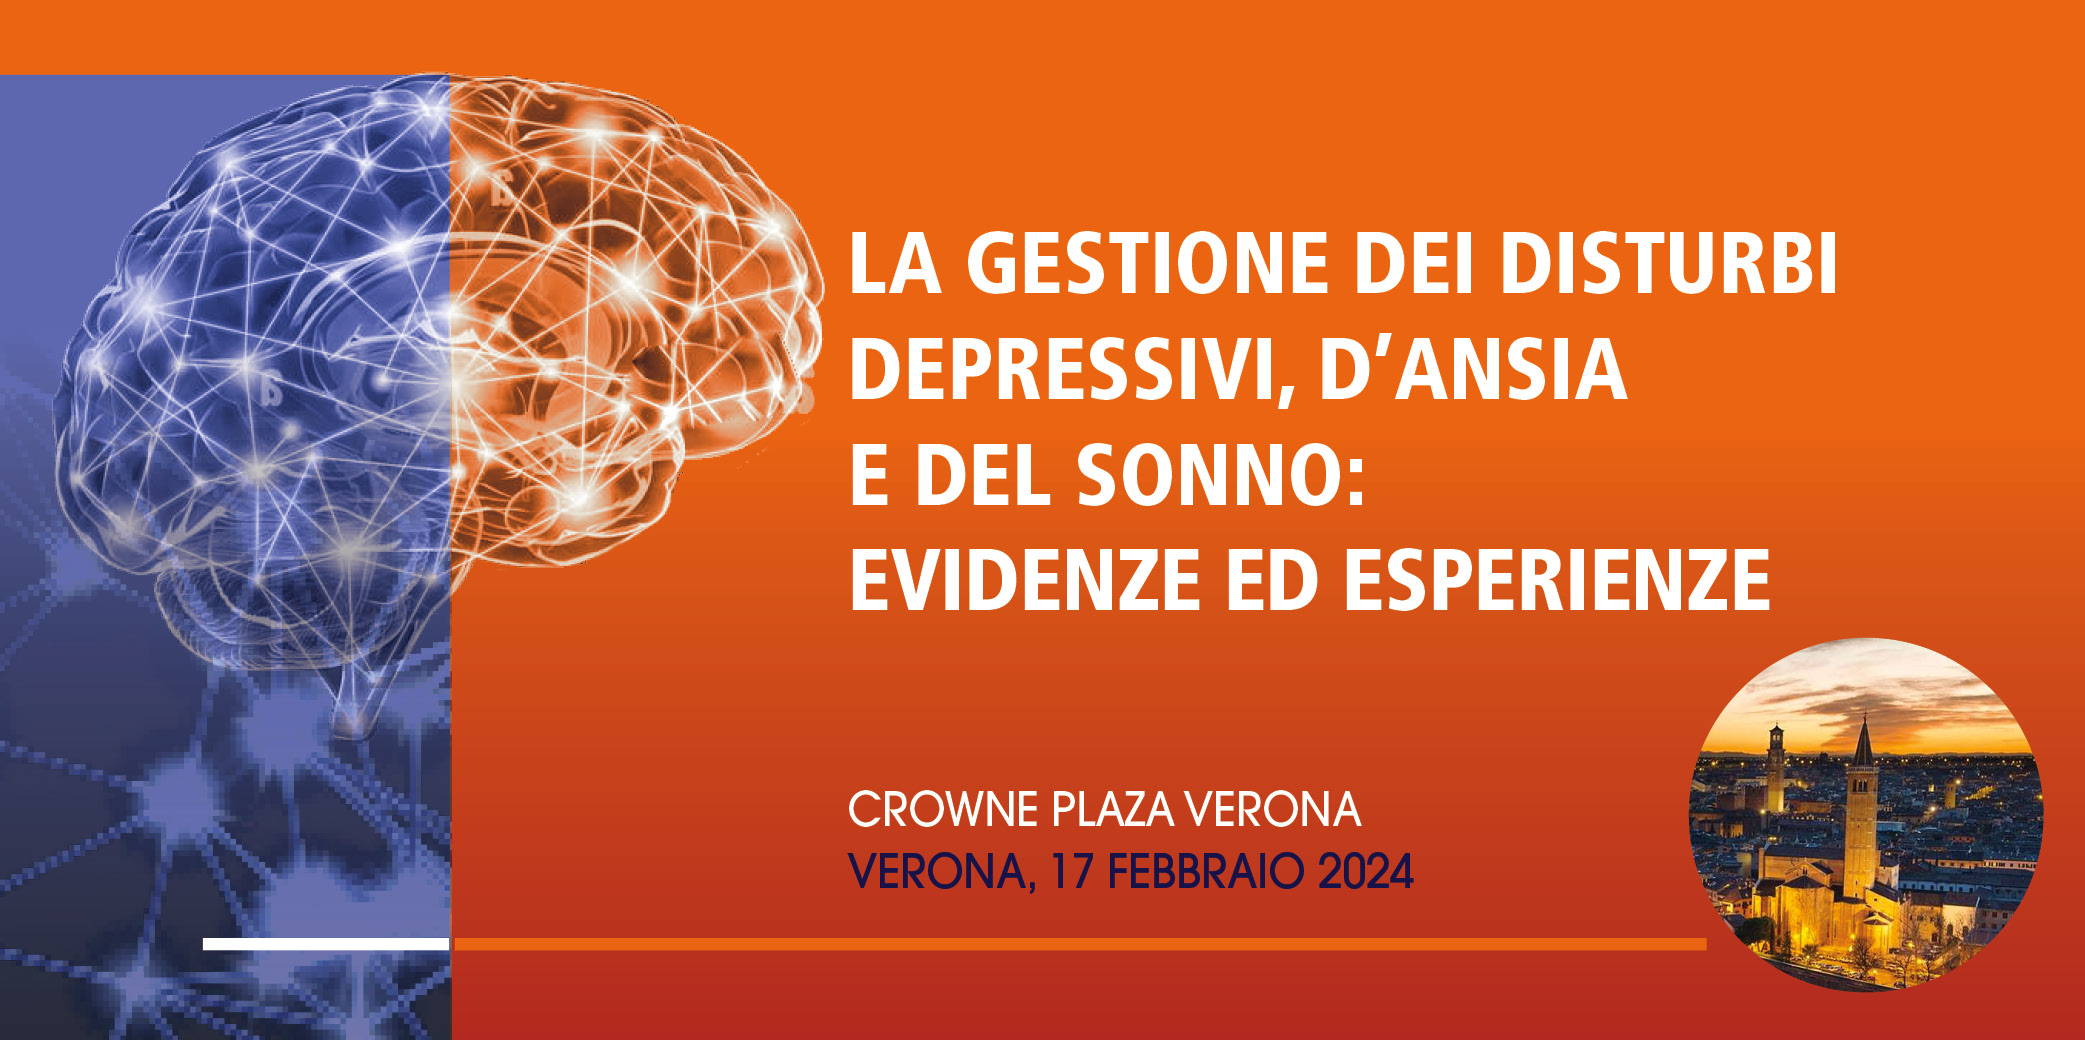 La gestione dei disturbi depressivi, d’ansia e del sonno: evidenze ed esperienze – Verona, 17 Febbraio 2024